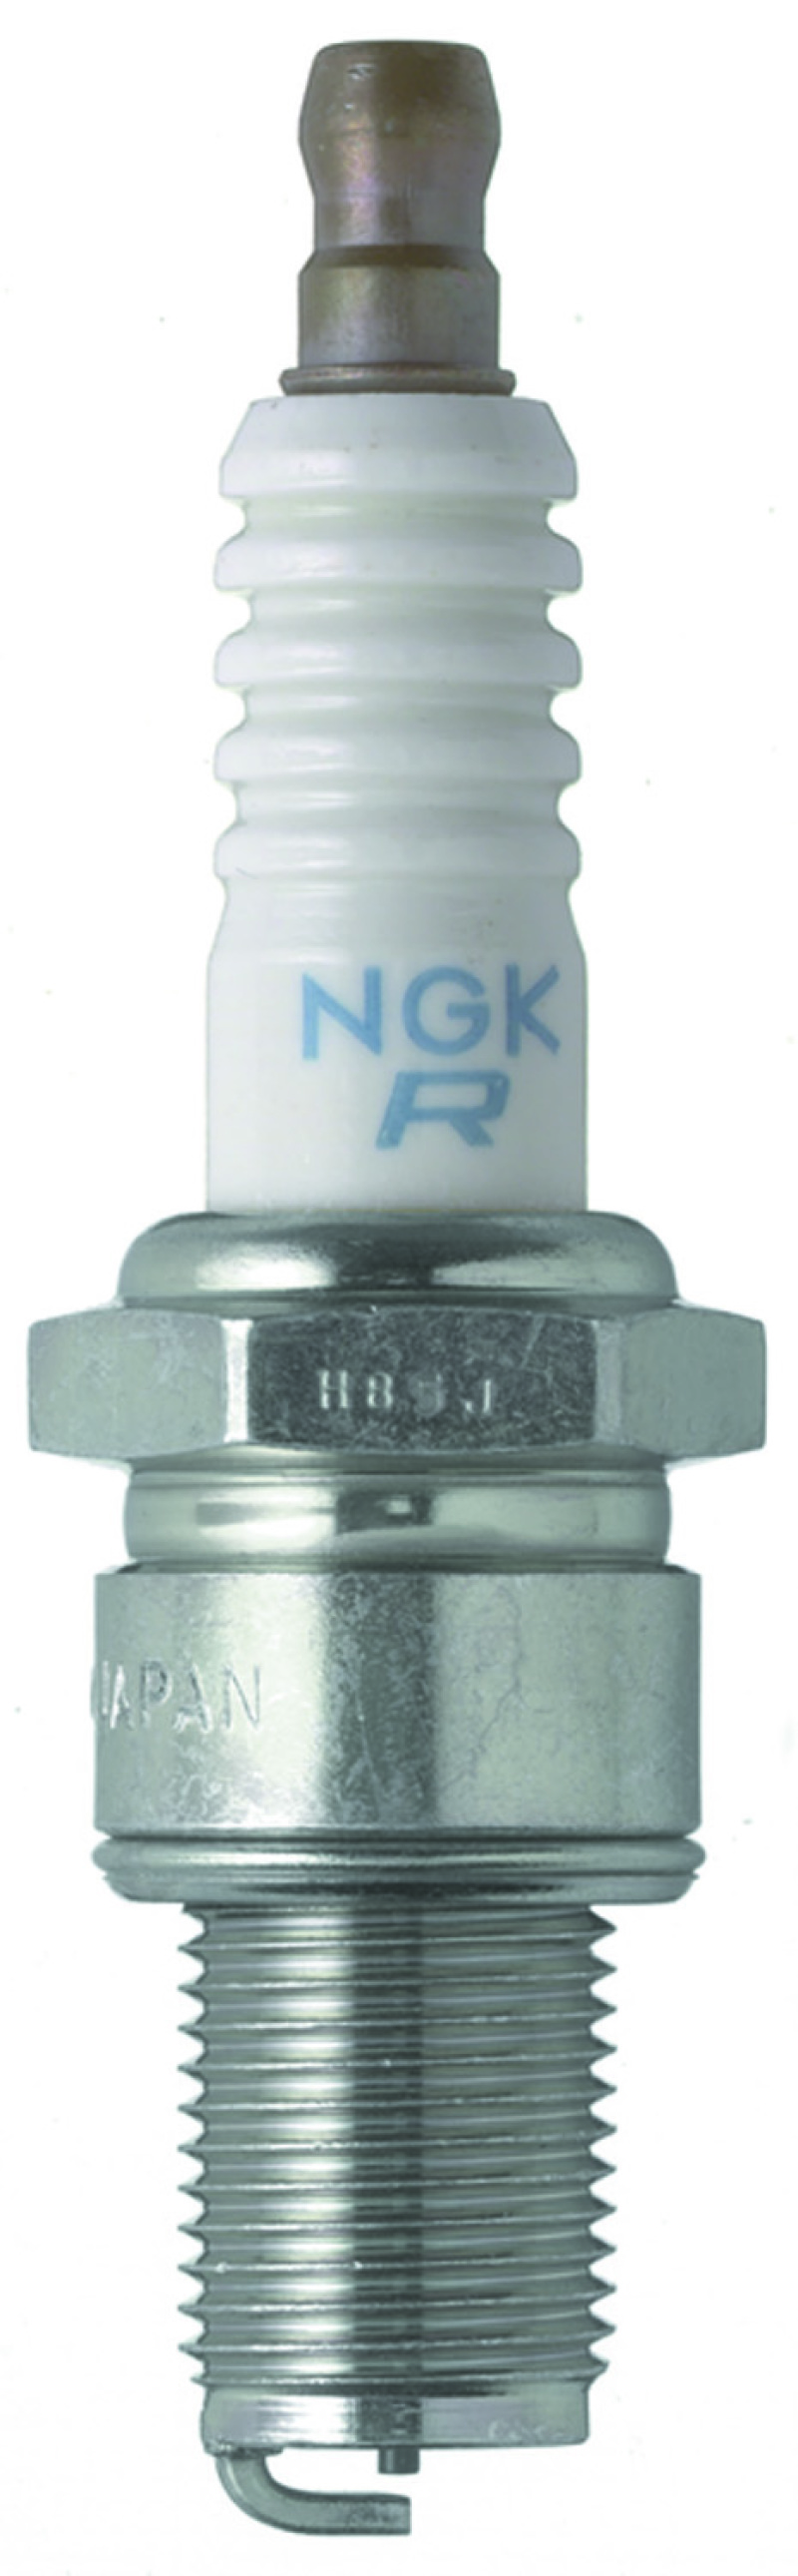 NGK Racing Spark Plug Box of 4 (BR10EG SOLID) - 3993